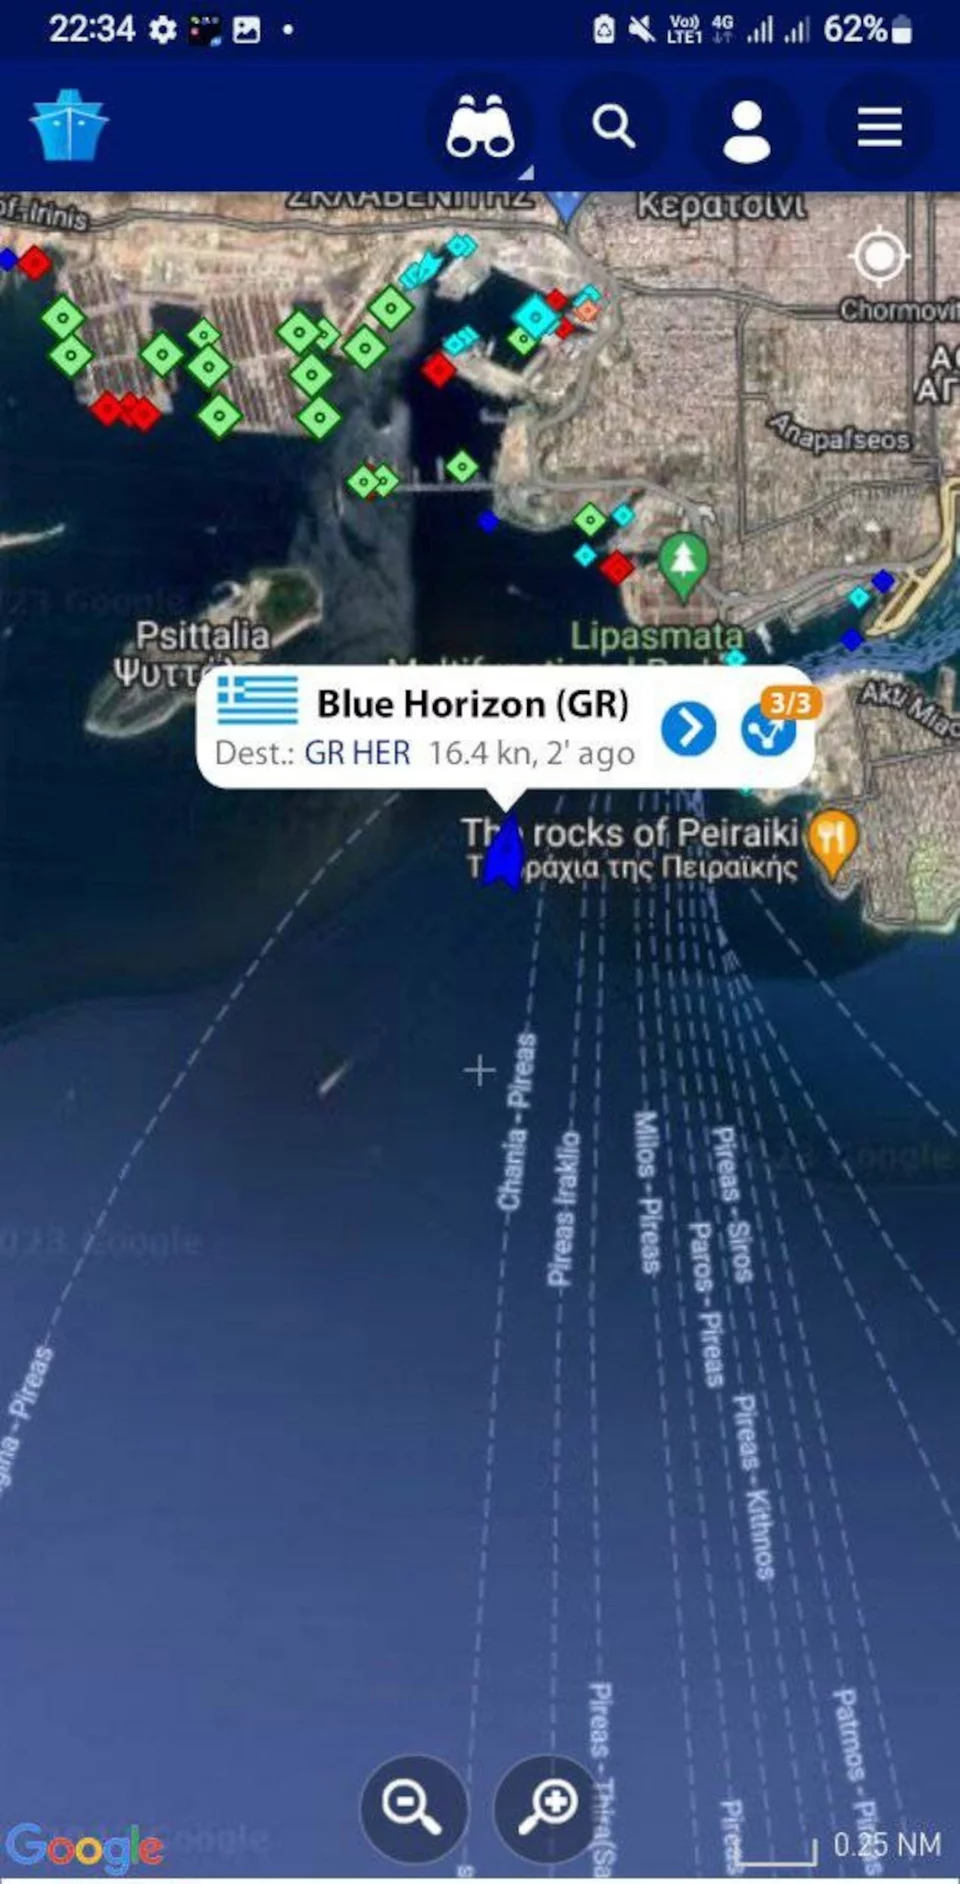 Η επιστροφή του Blue Horizon στον Πειραιά / Φωτογραφία: Facebook